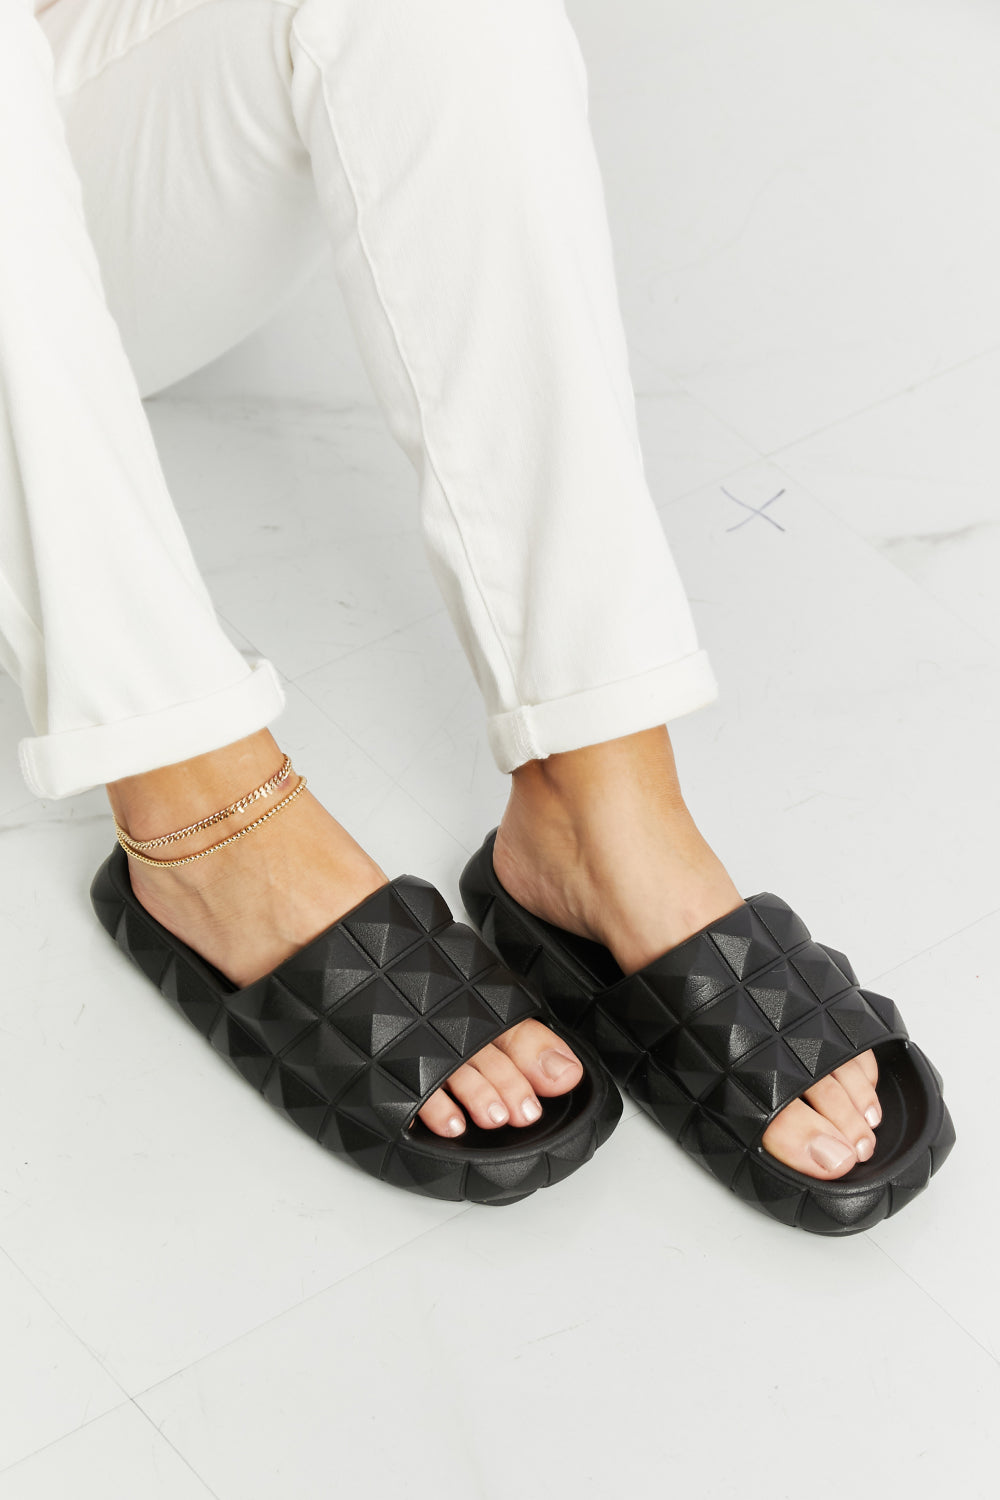 Let's Chill Studded Slide Sandal